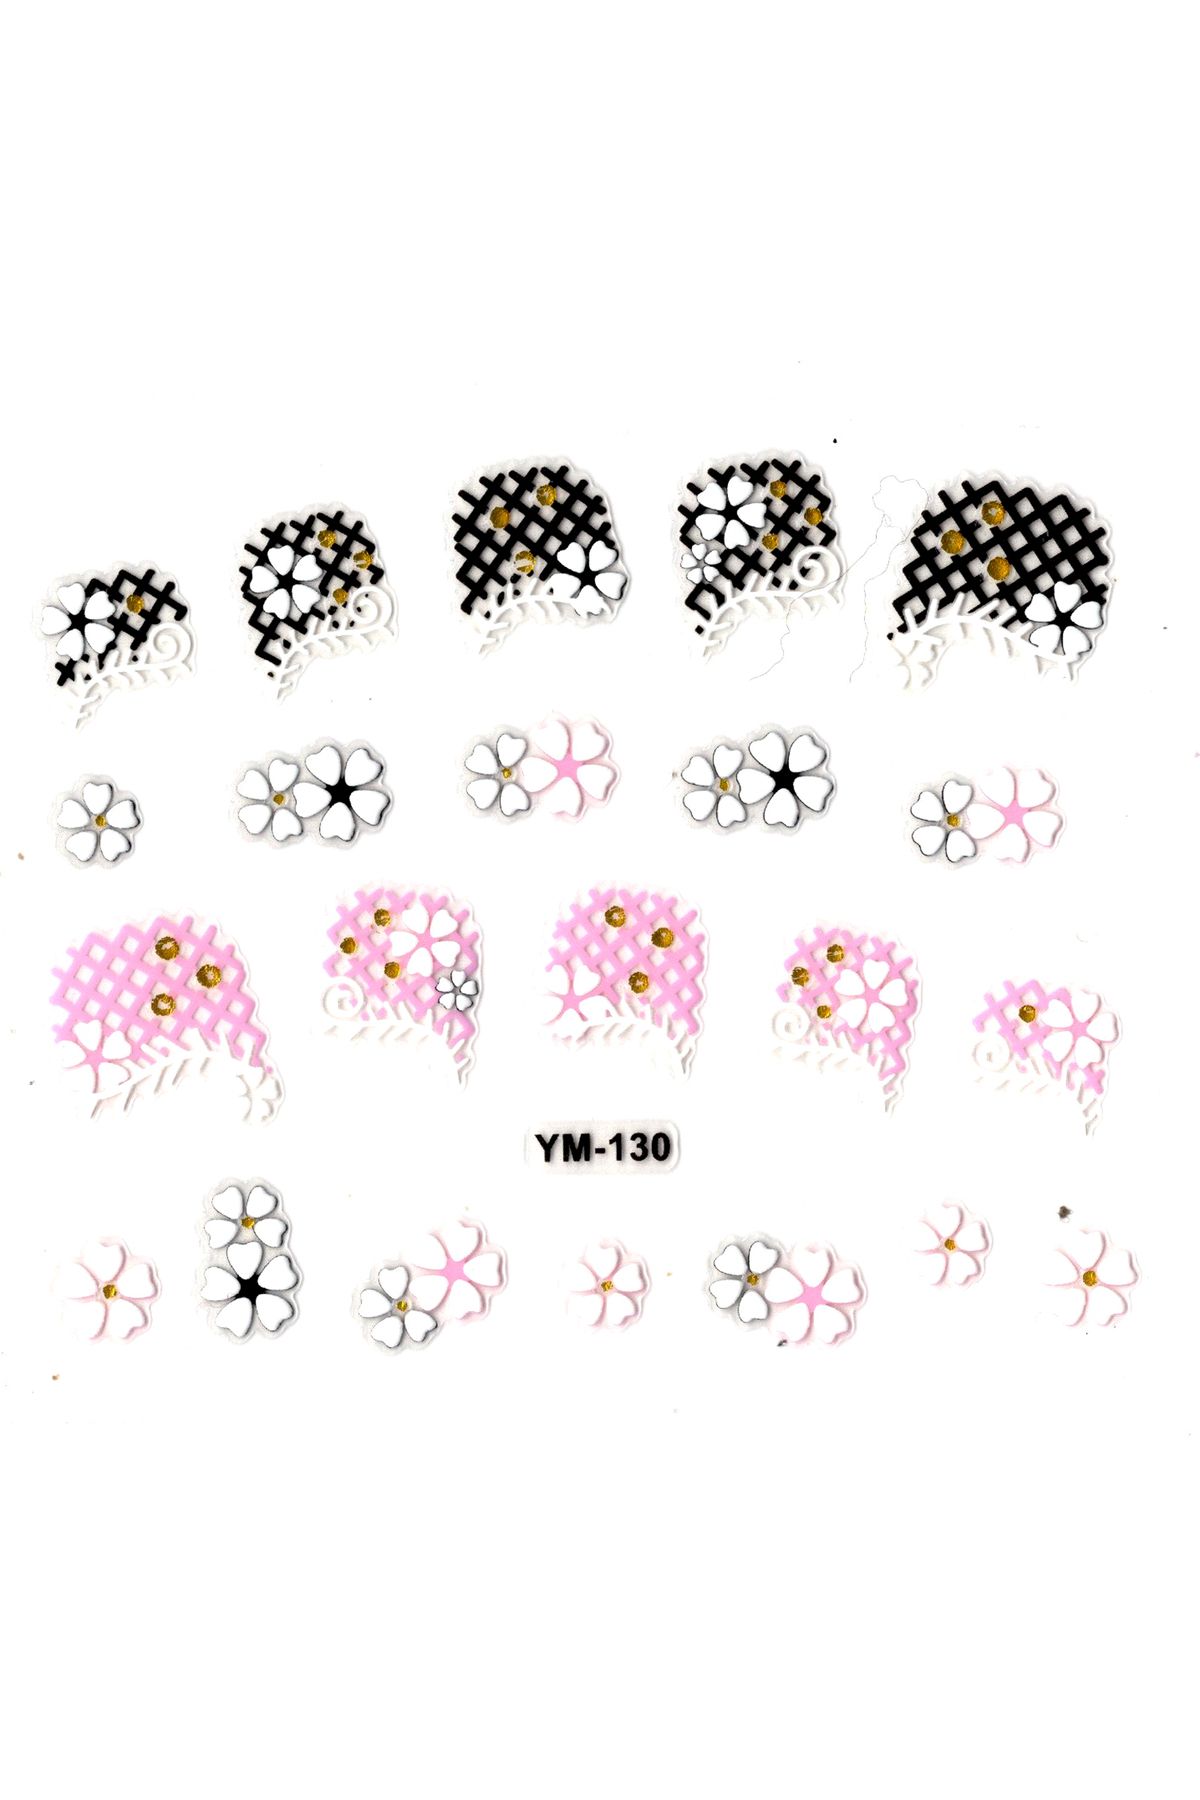 Limmy Tırnak Sticker, Tırnak Süsleme, Nail Art (ym-130) - 6X5 cm - İkili Kalpli Çiçek